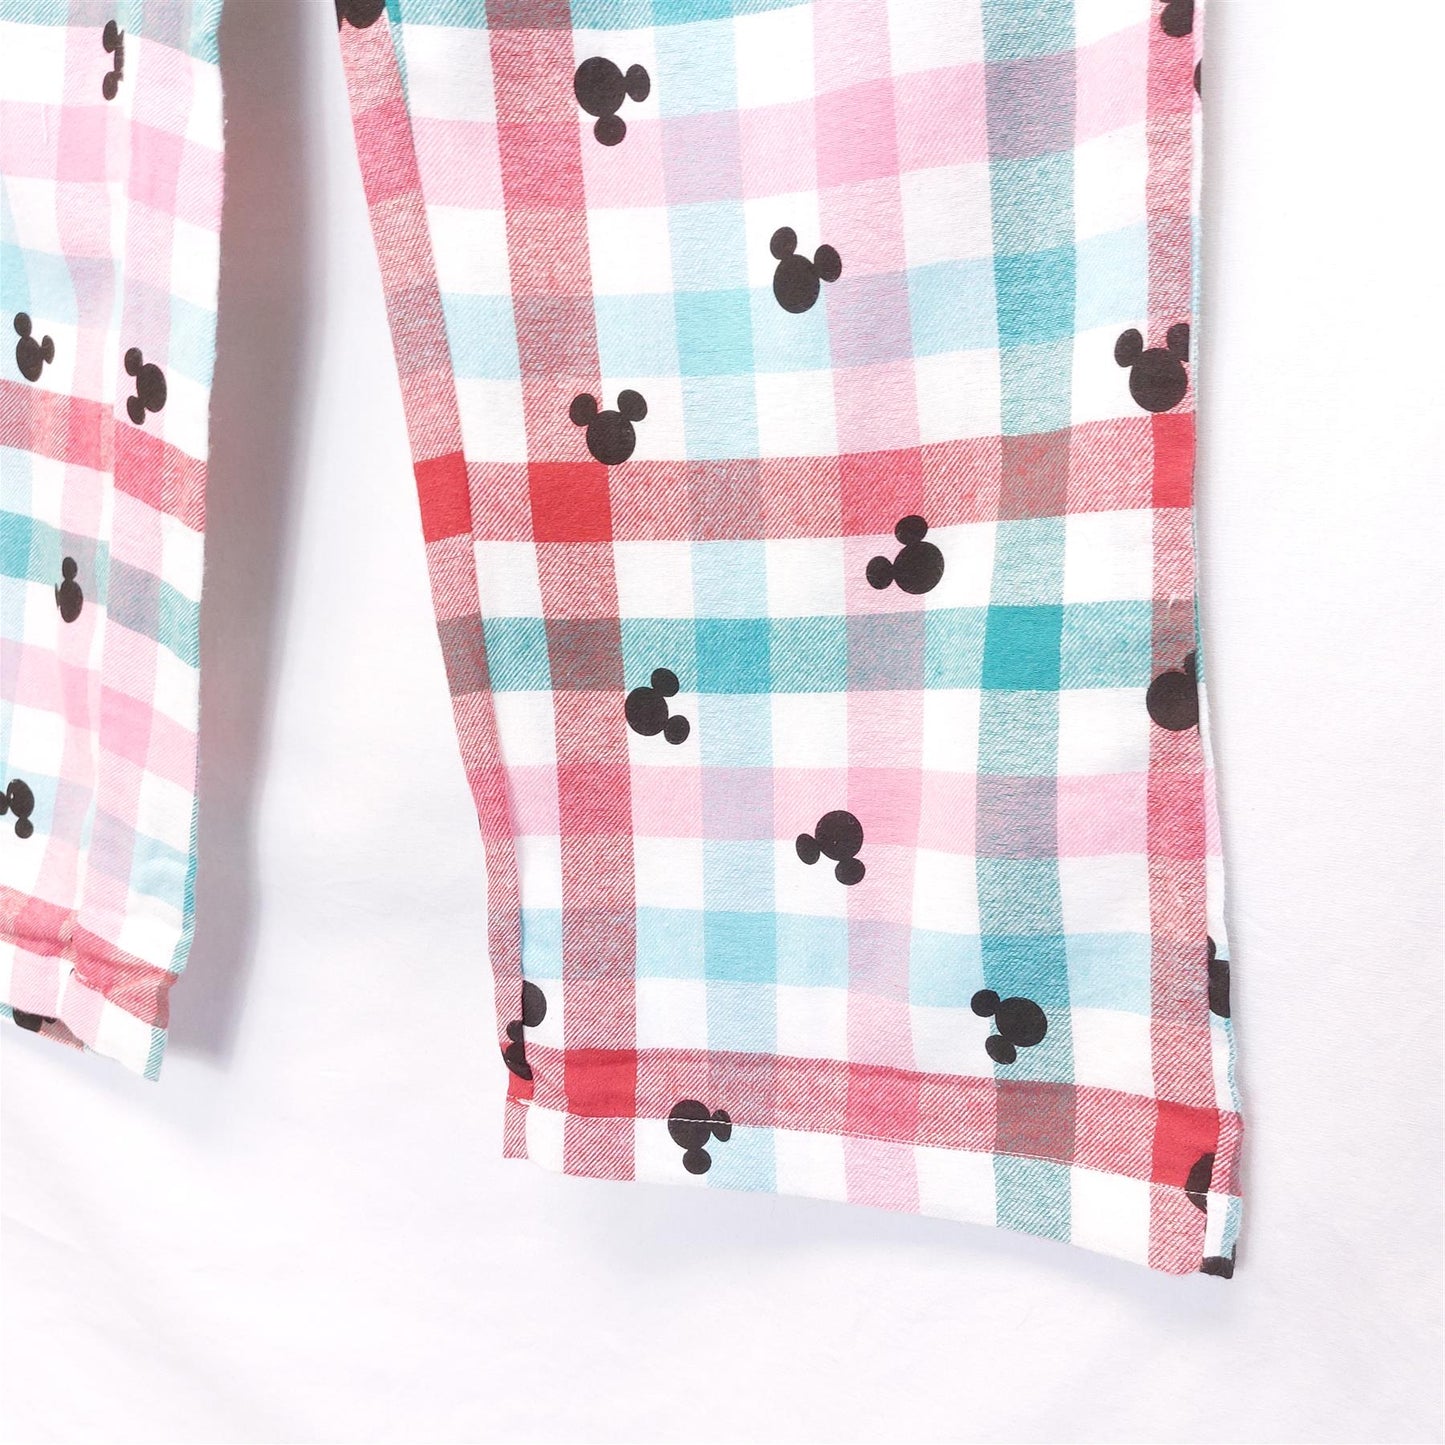 Women's Warm Pyjama Bottoms Pure Brushed Cotton Multicolour Mouse Motif PJ Pants